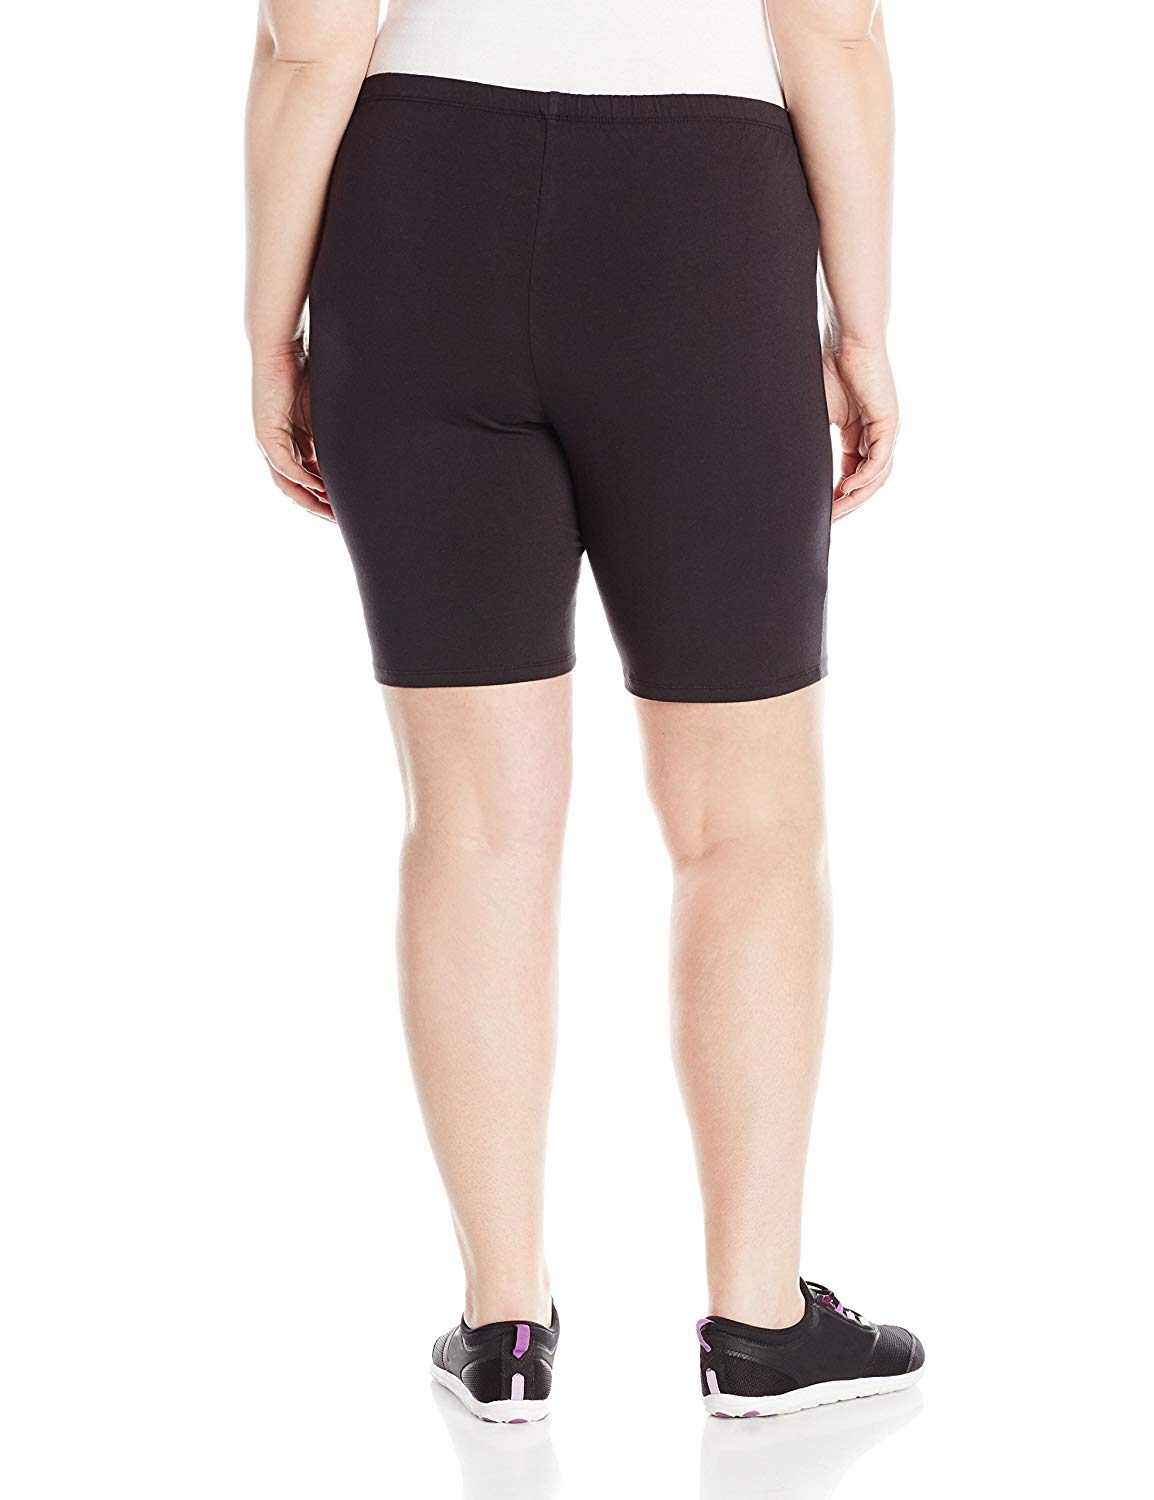 Women's Plus Size Biker Shorts, XL